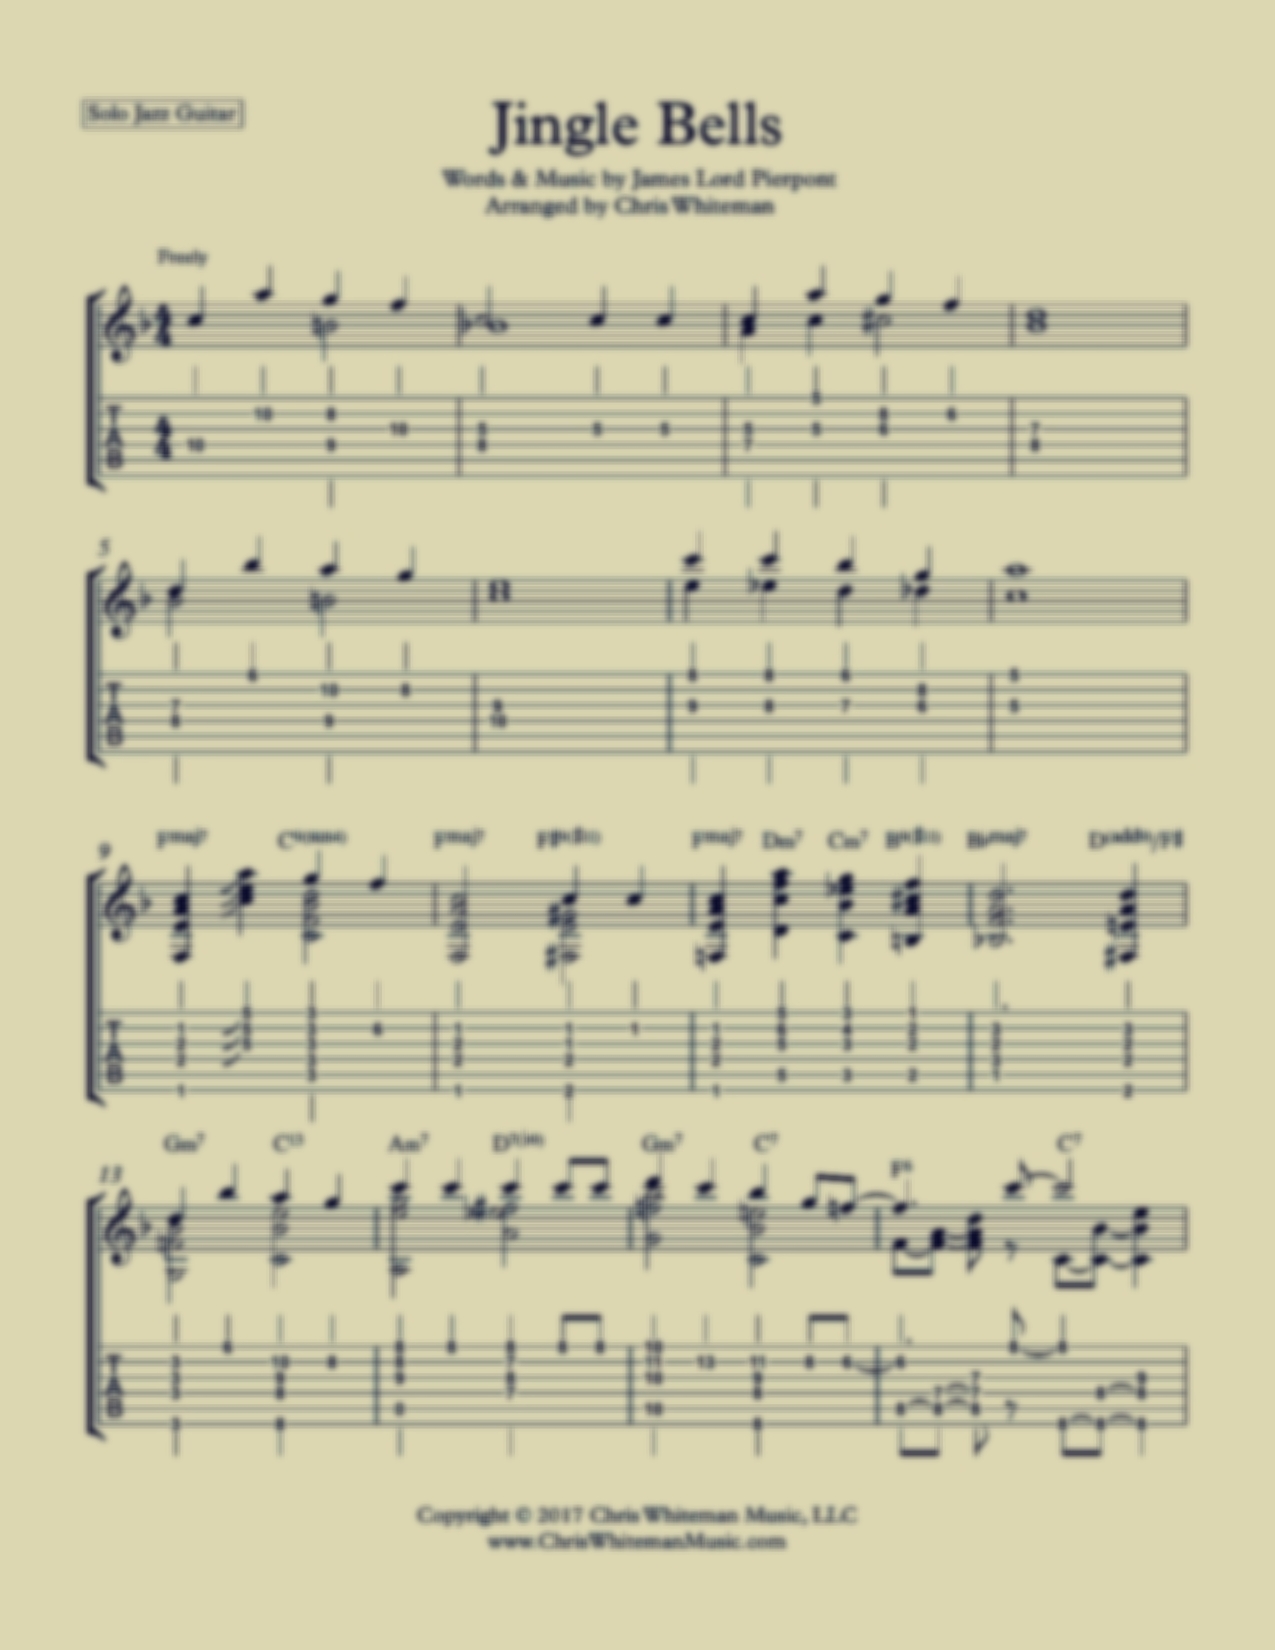 Jingle Bells - Jazz Guitar Chord Melody — Chris Whiteman Music